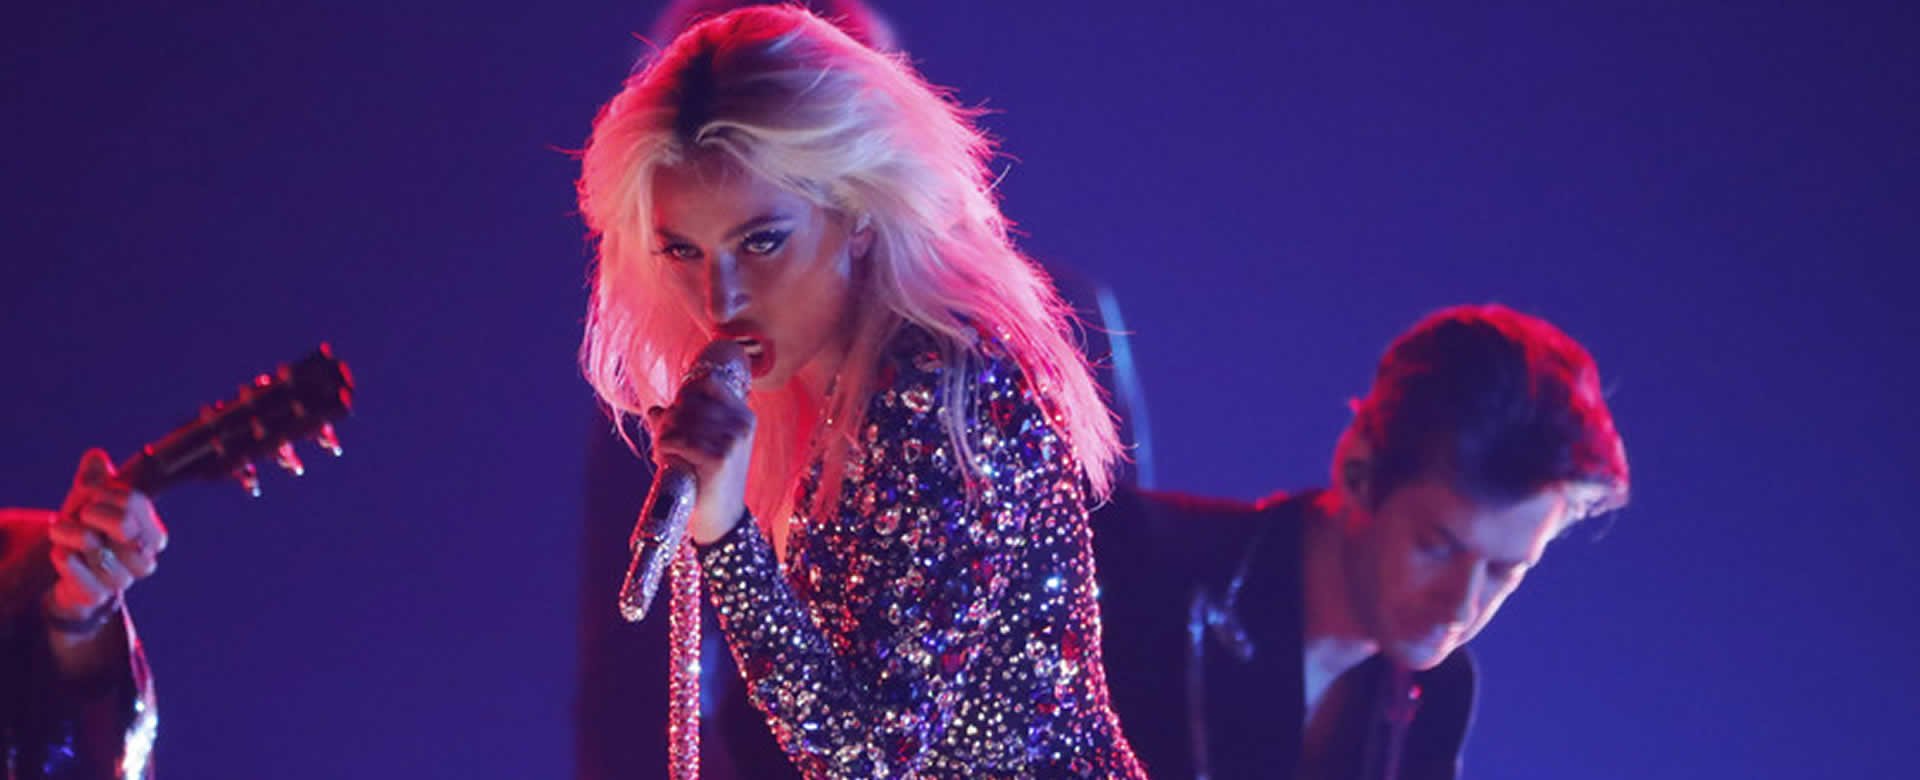 Lady Gaga sufre una caída desde el escenario mientras bailaba con un fan